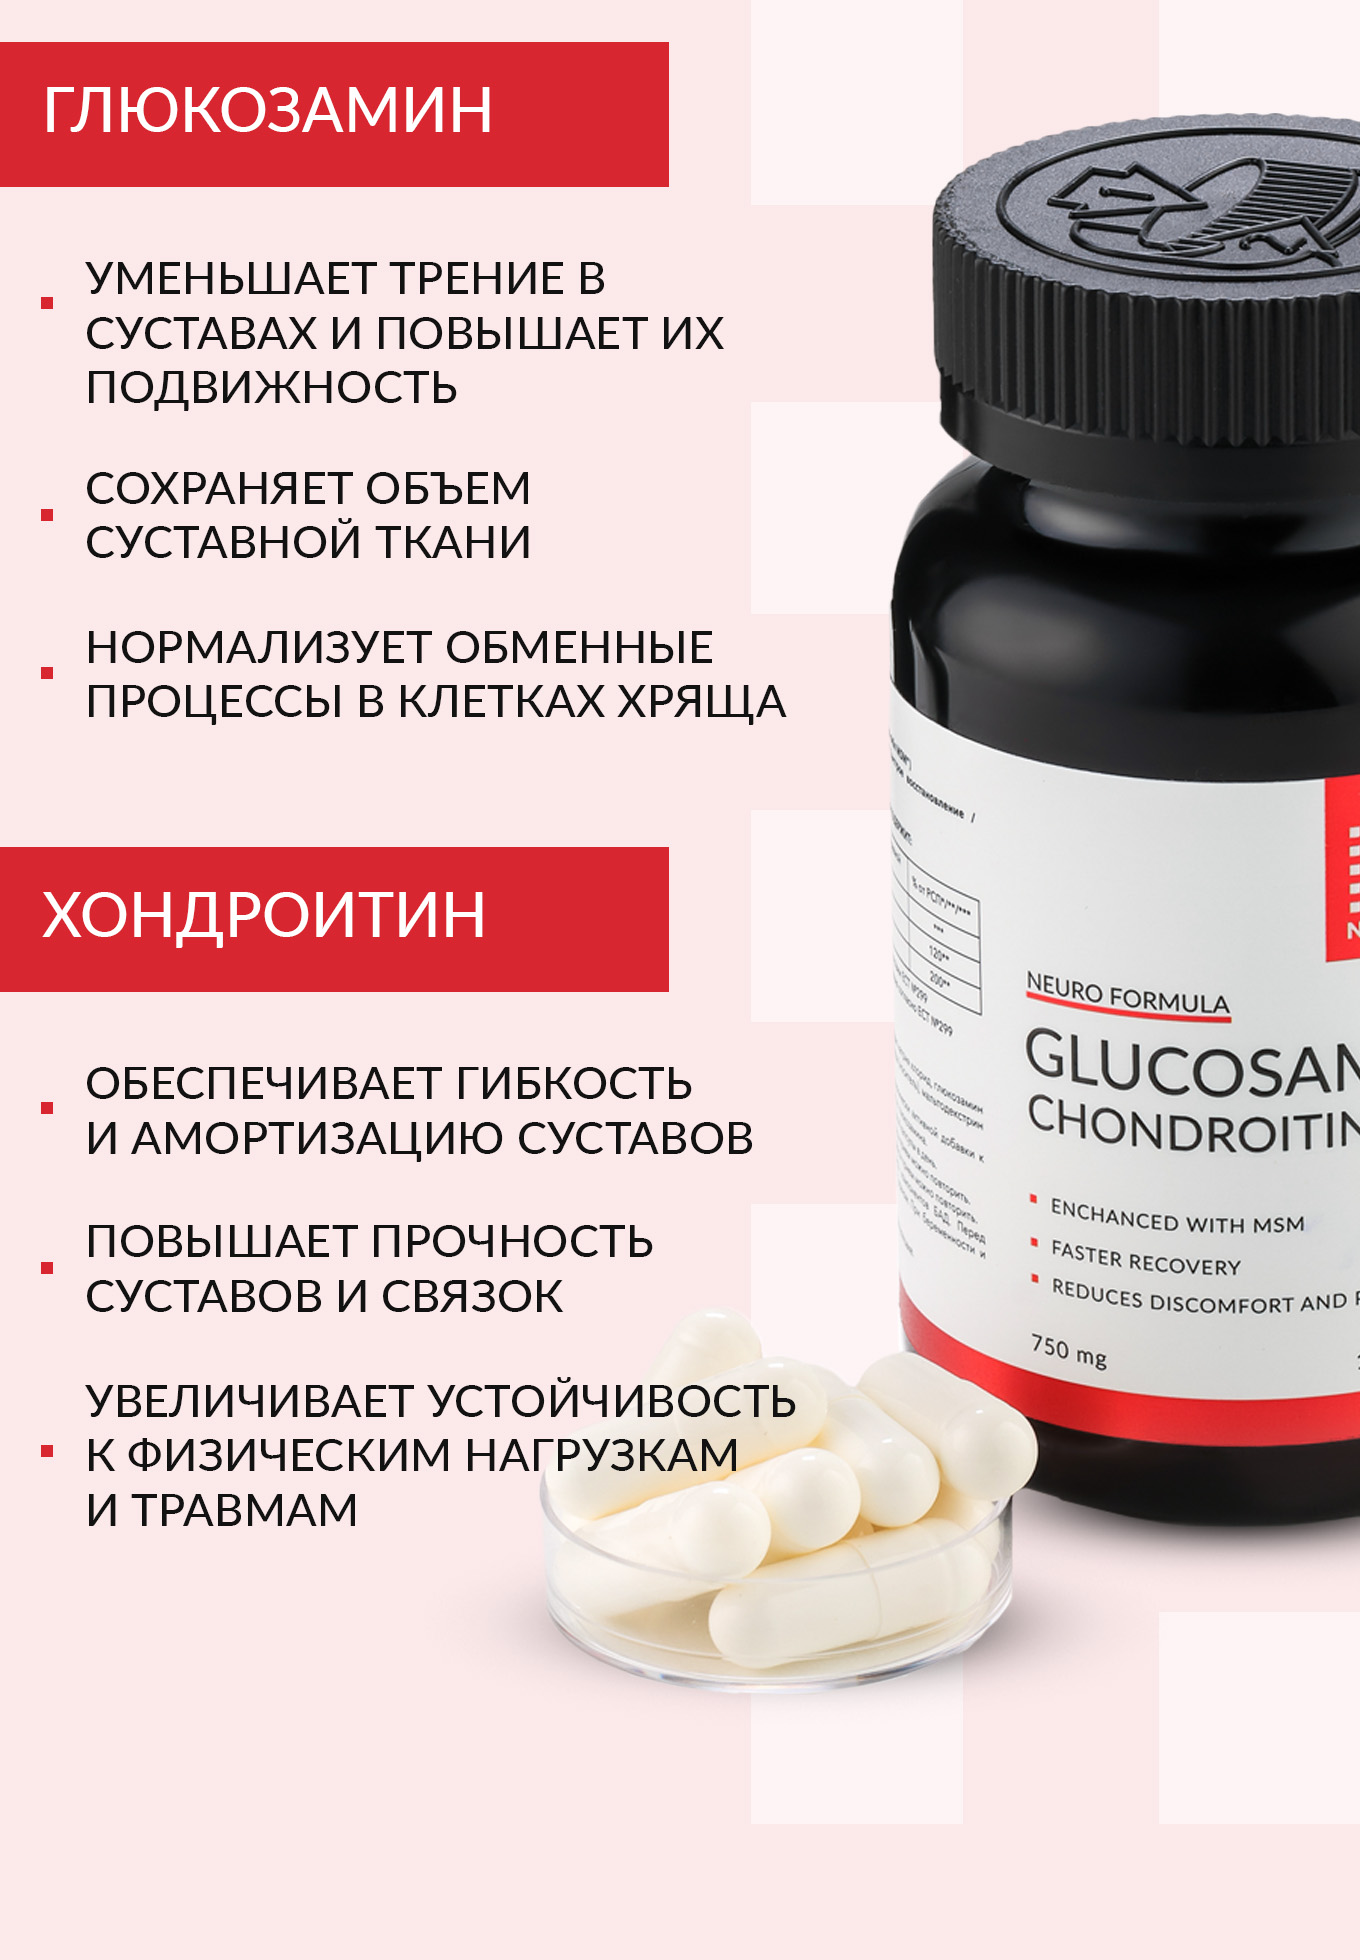 Глюкозамин Хондроитин МСМ NUTRIPOLIS - фото 4